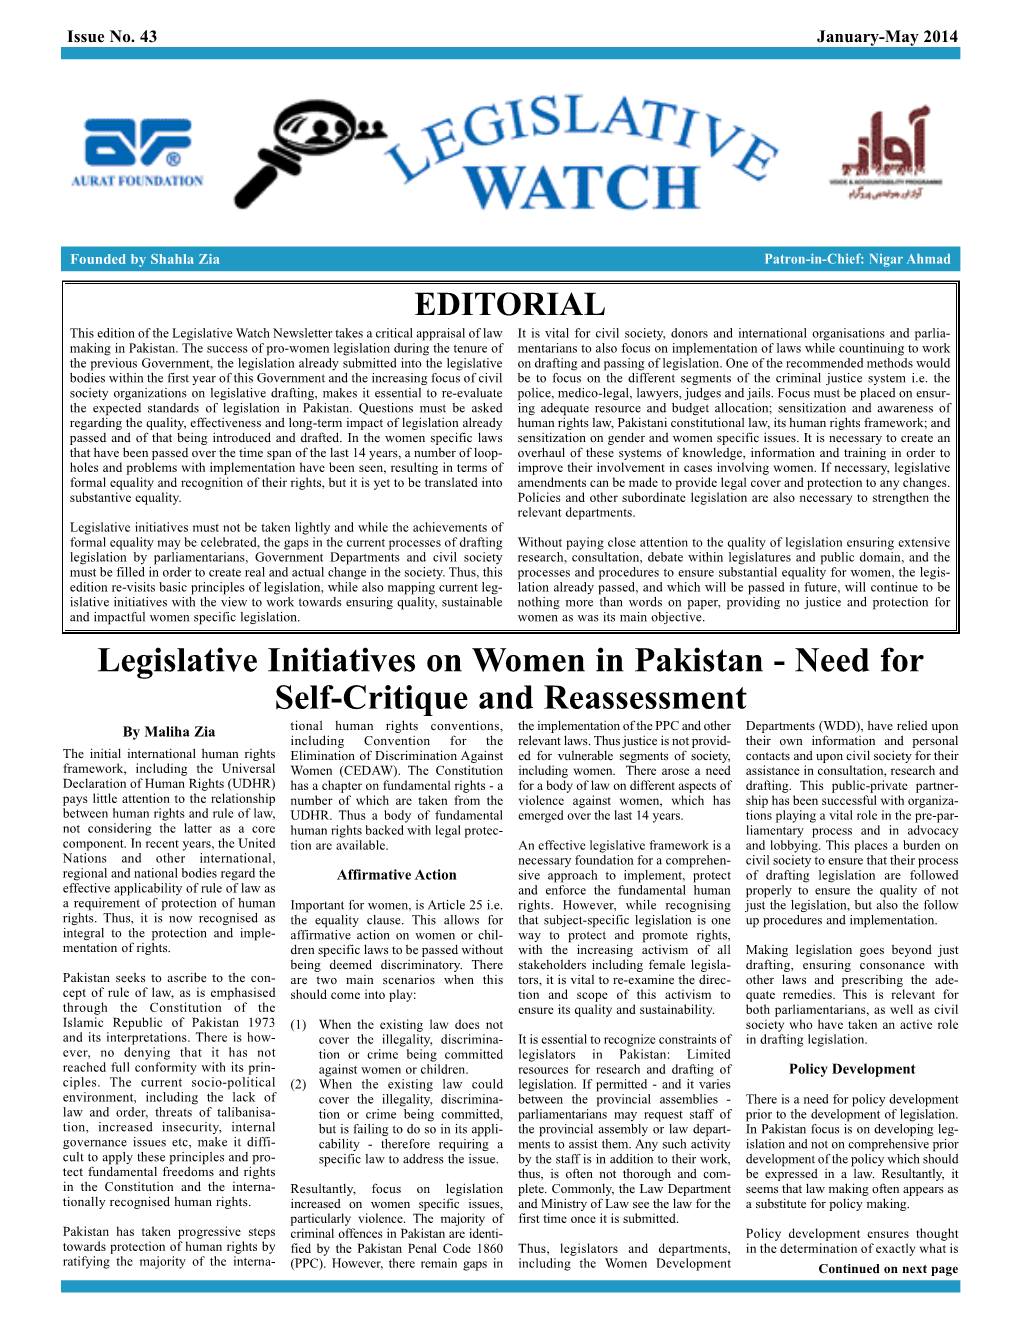 Legislative Initiatives on Women in Pakistan